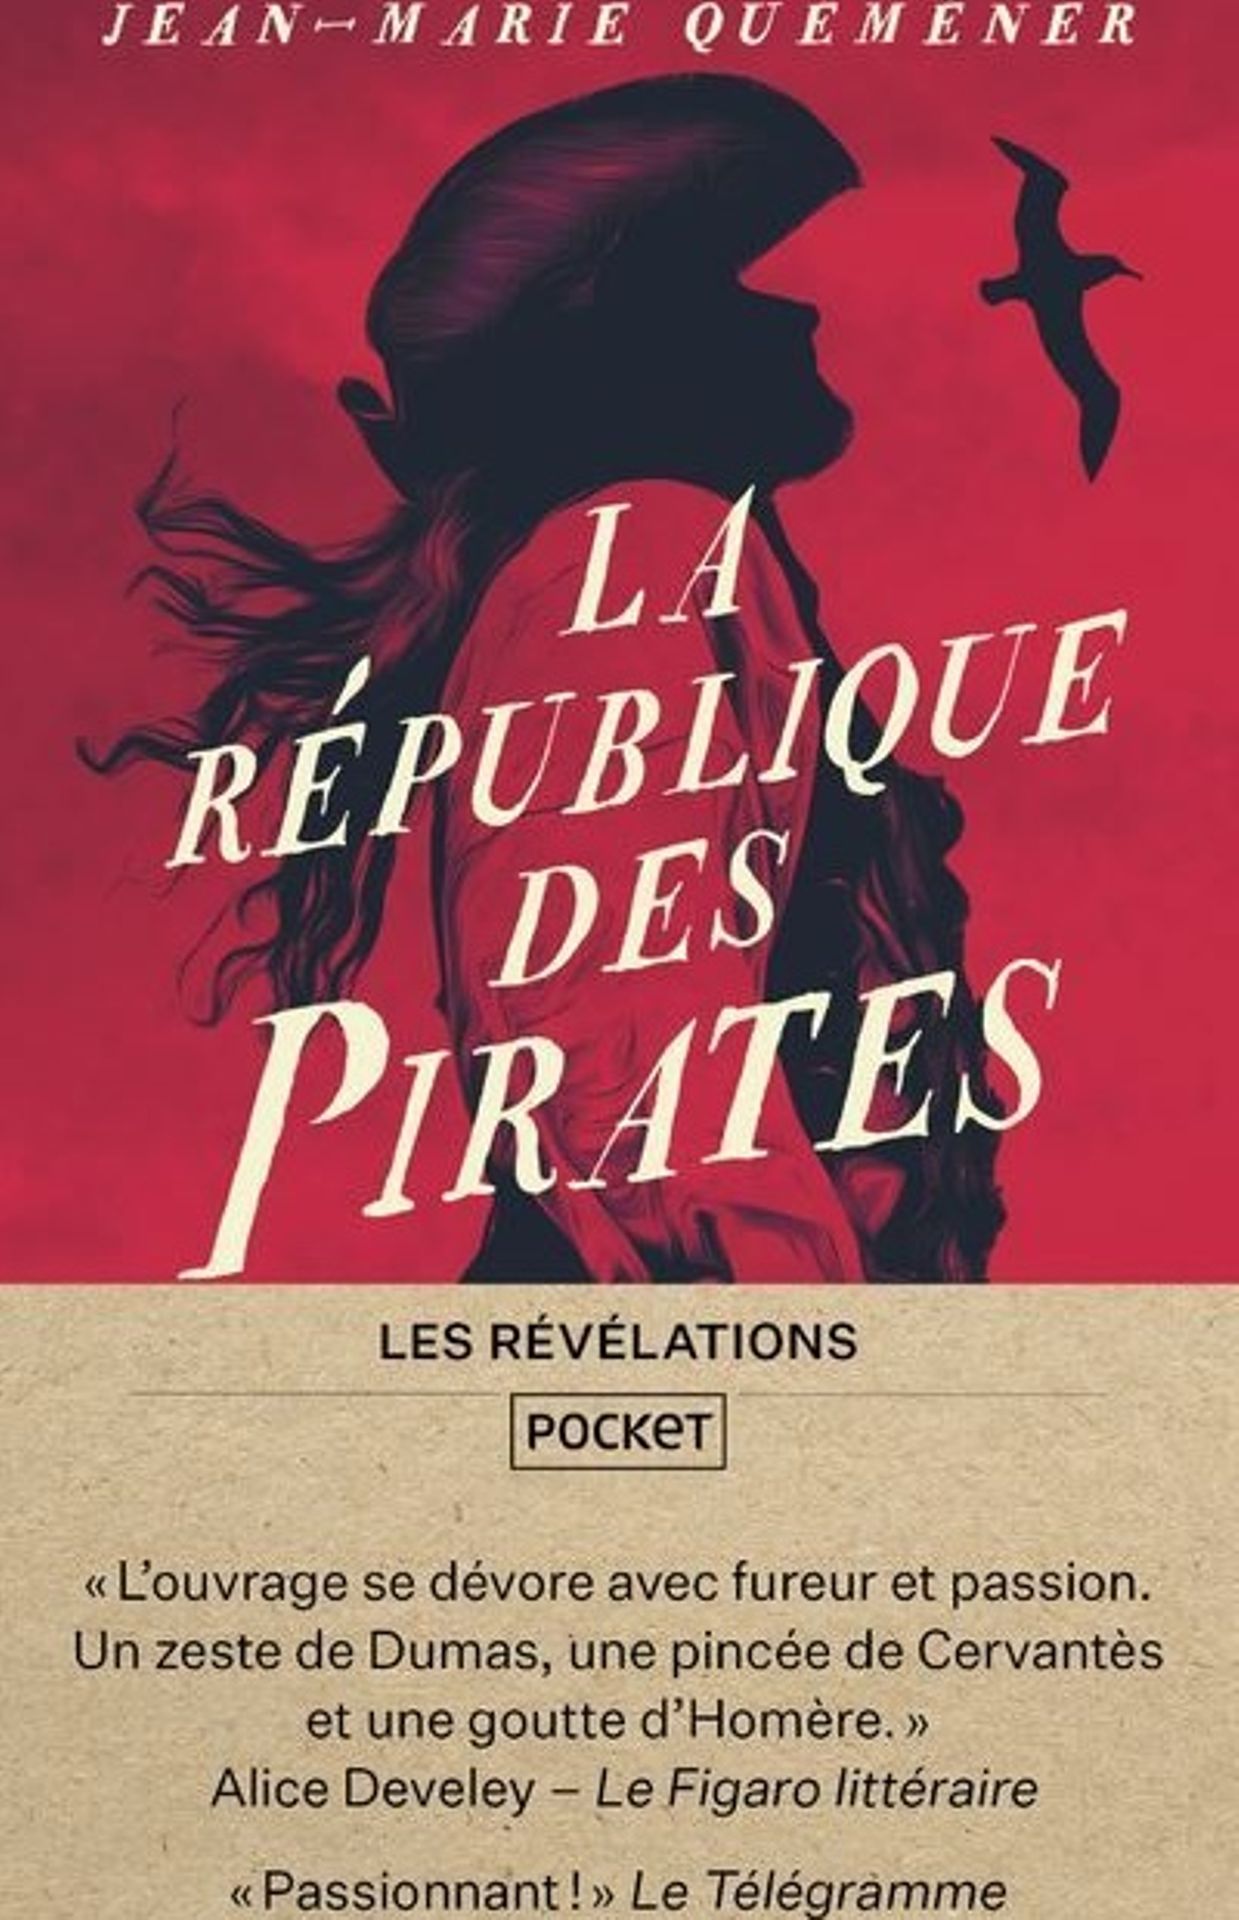 "La république des pirates" de Jean-Marie Quéméner aux éditions Pocket